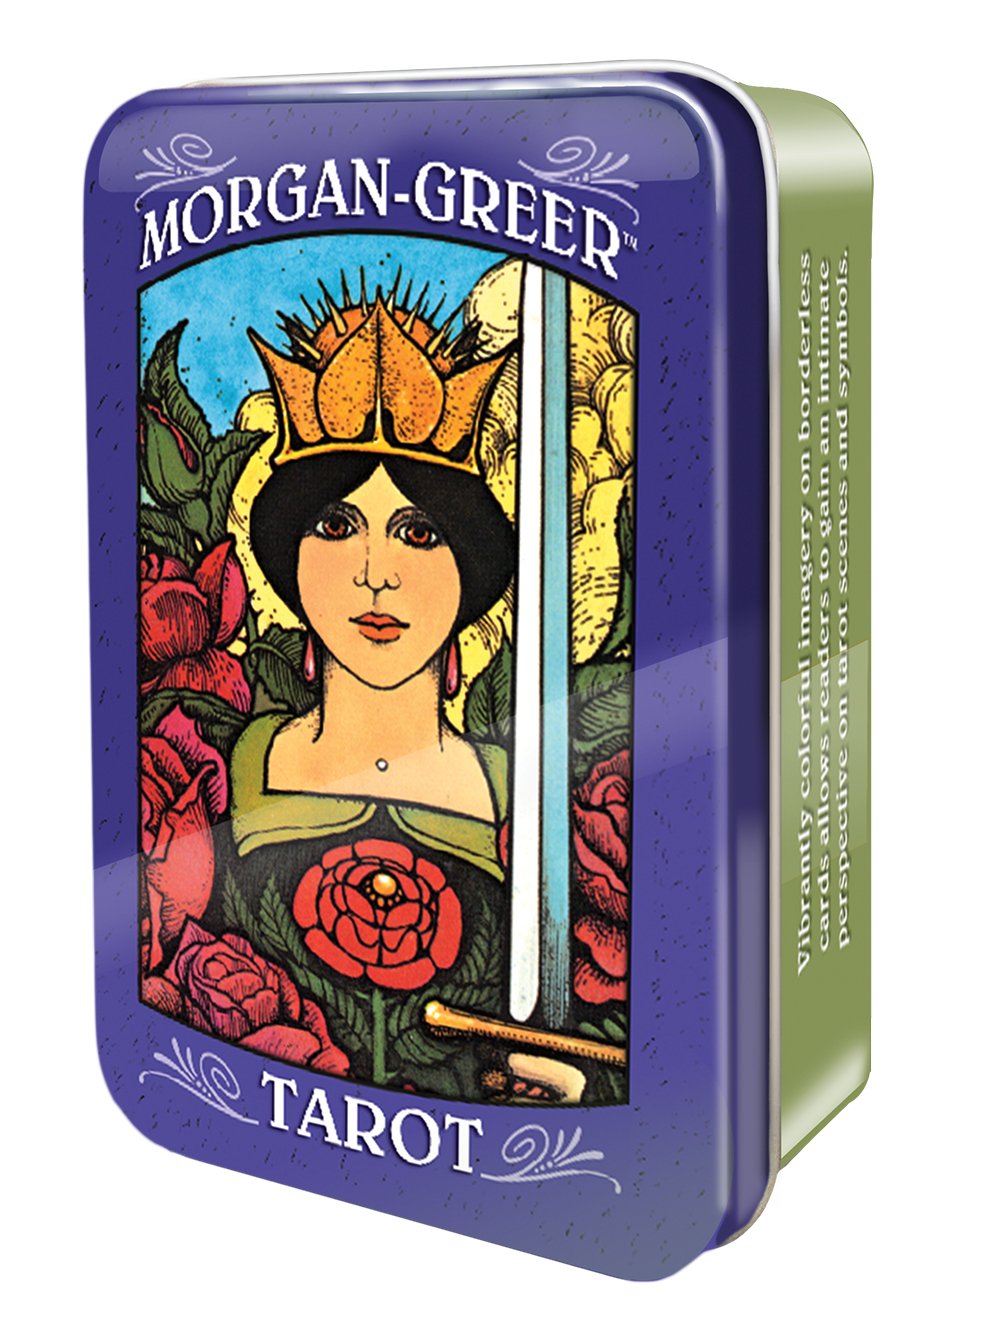 Morgan-Greer Tarot in a Tin by Bill Greer & Lloyd Morgan